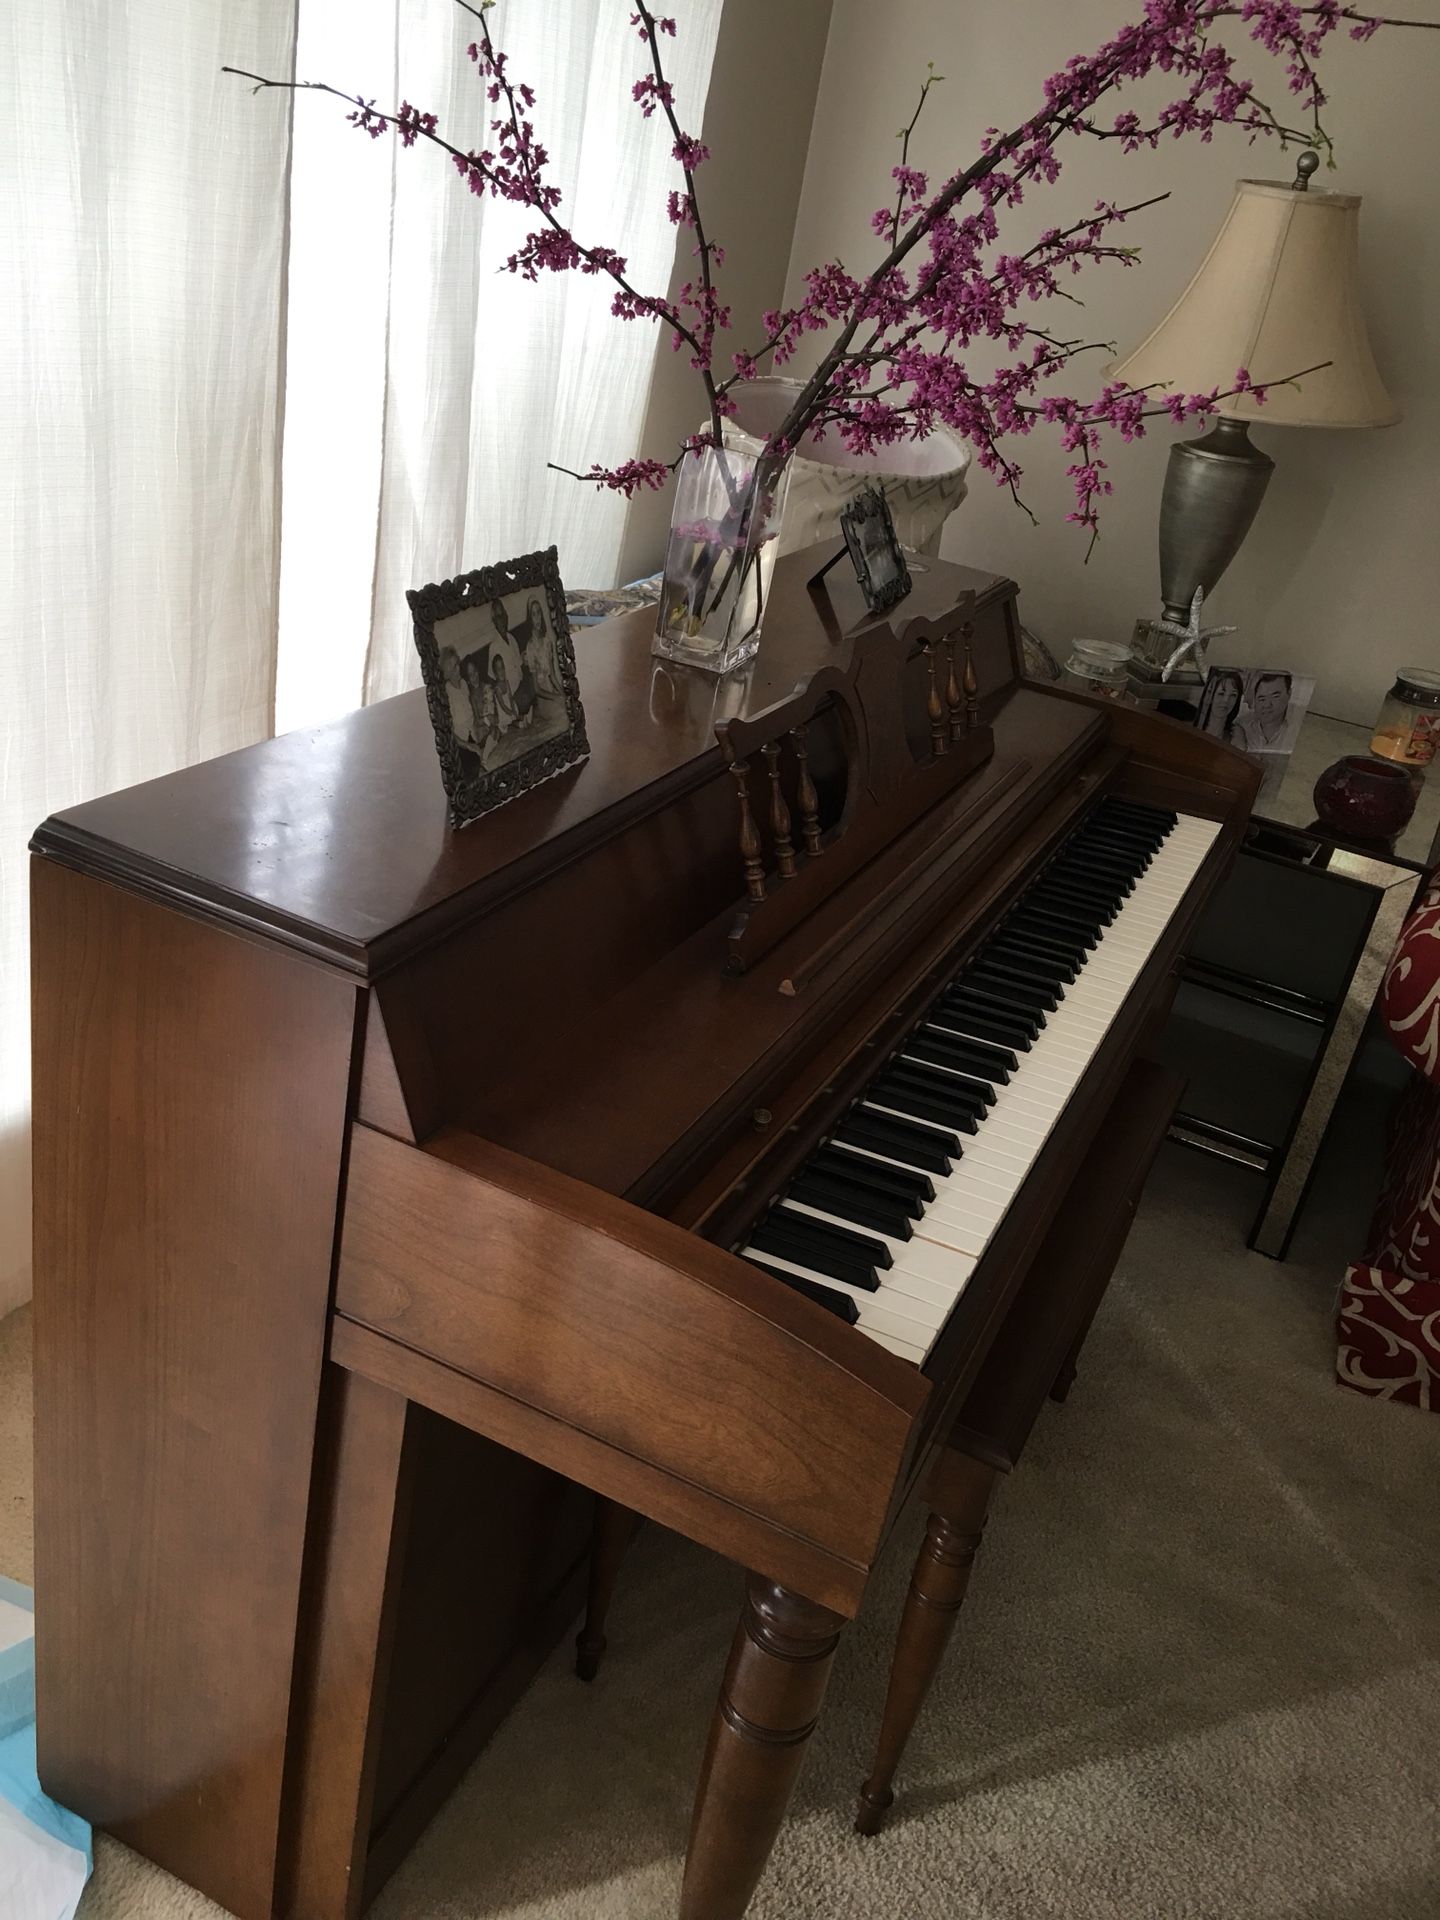 Piano (make: Gable - Nelson made by the Everett Piano Company)